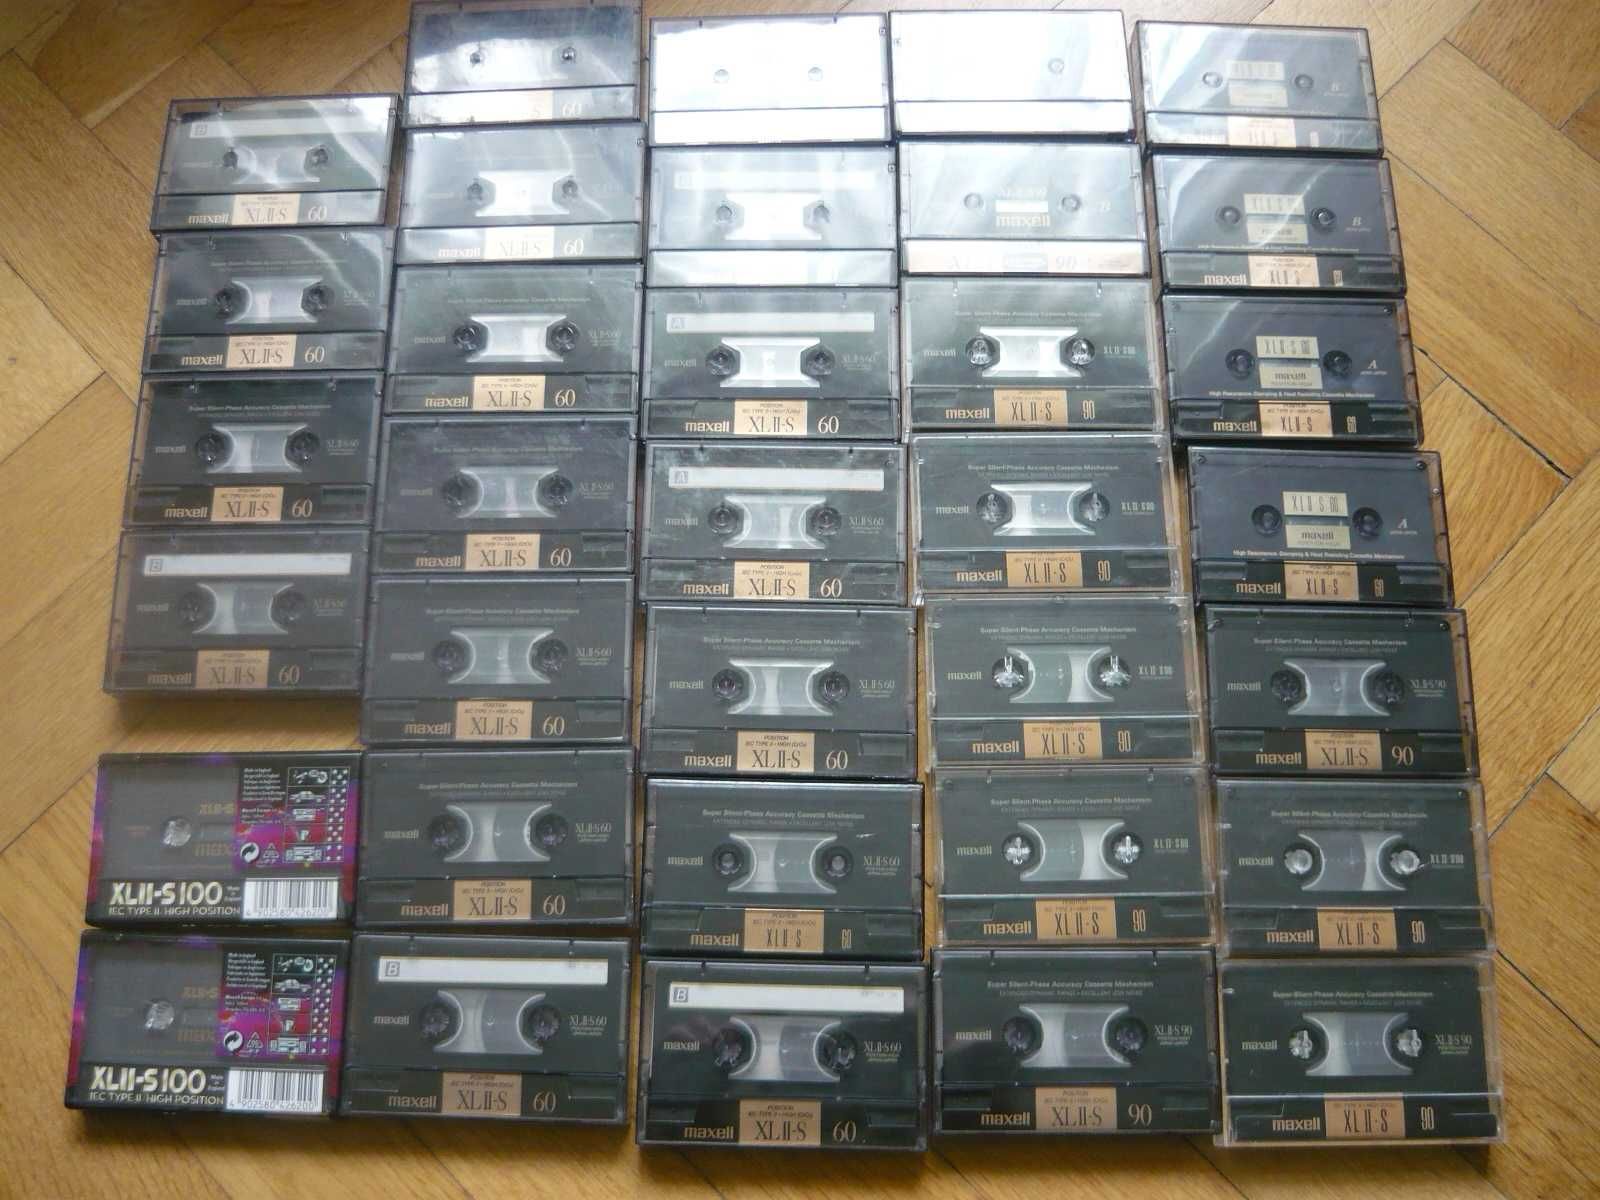 Maxell XL IIS 60 i 90 kasety 34 szt